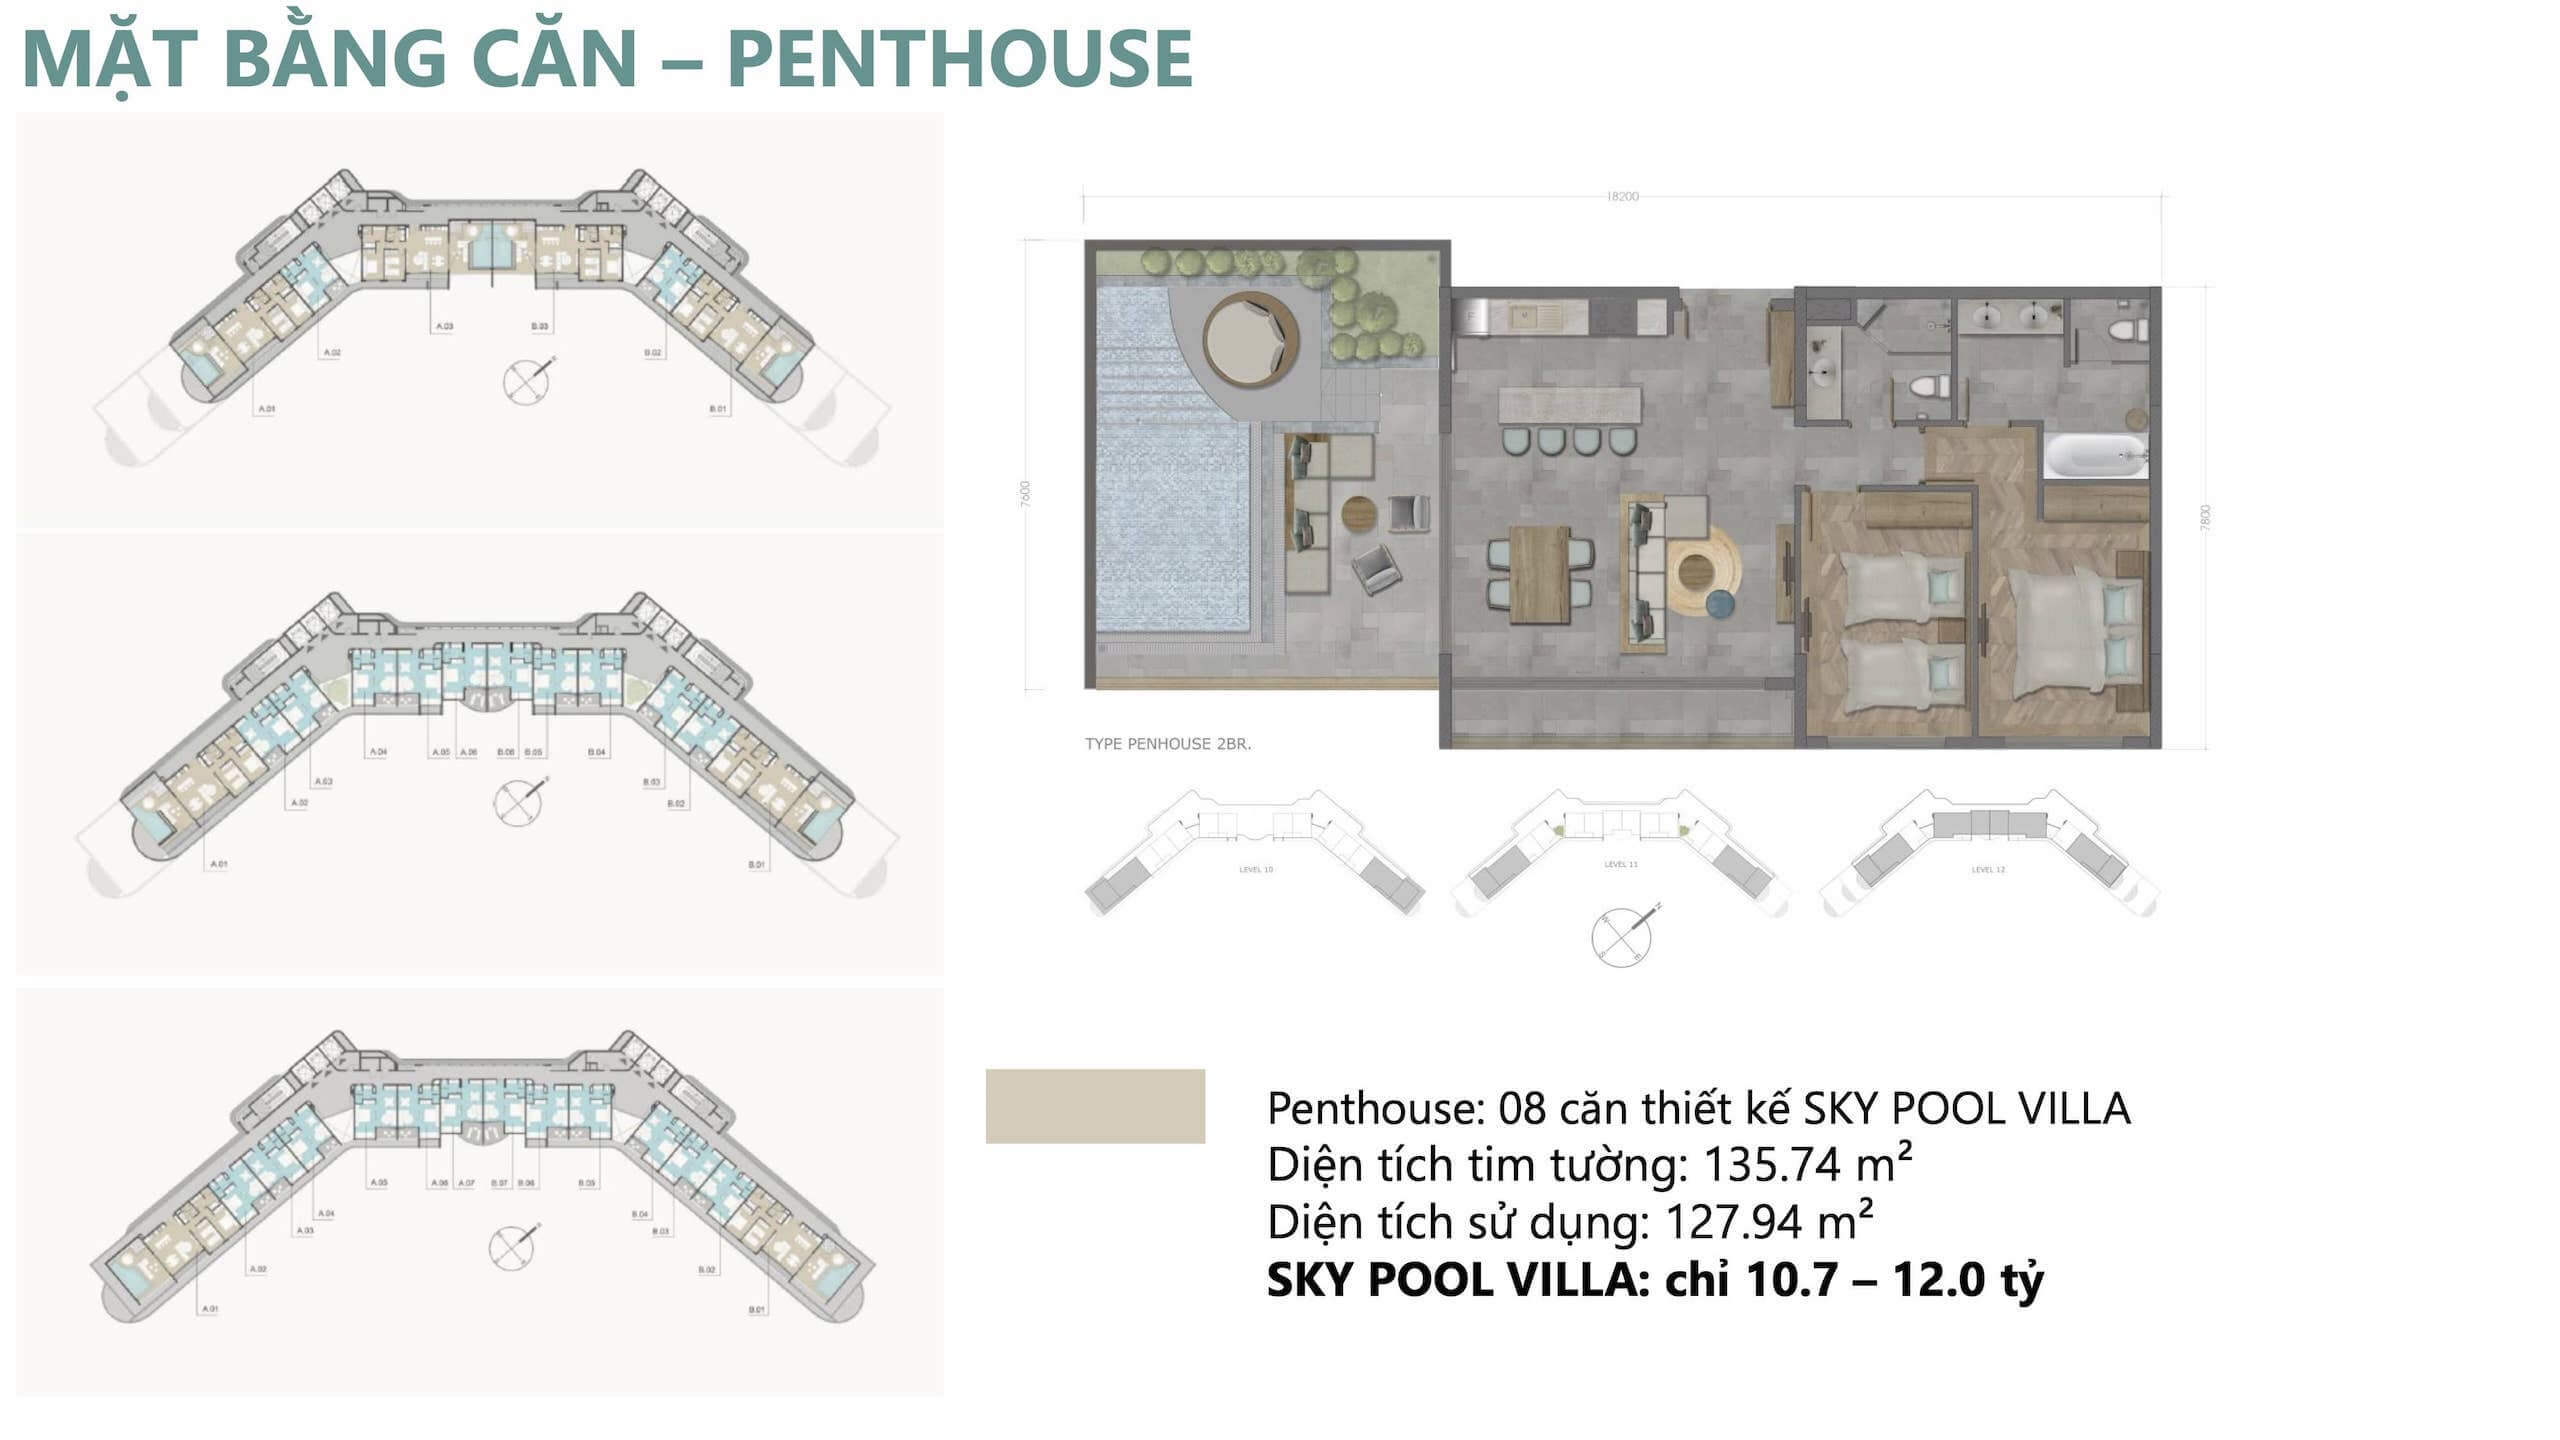 Mặt bằng căn hộ khách sạn condotel penthouse 2 phòng ngủ Ixora Hồ Tràm by Fusion 1